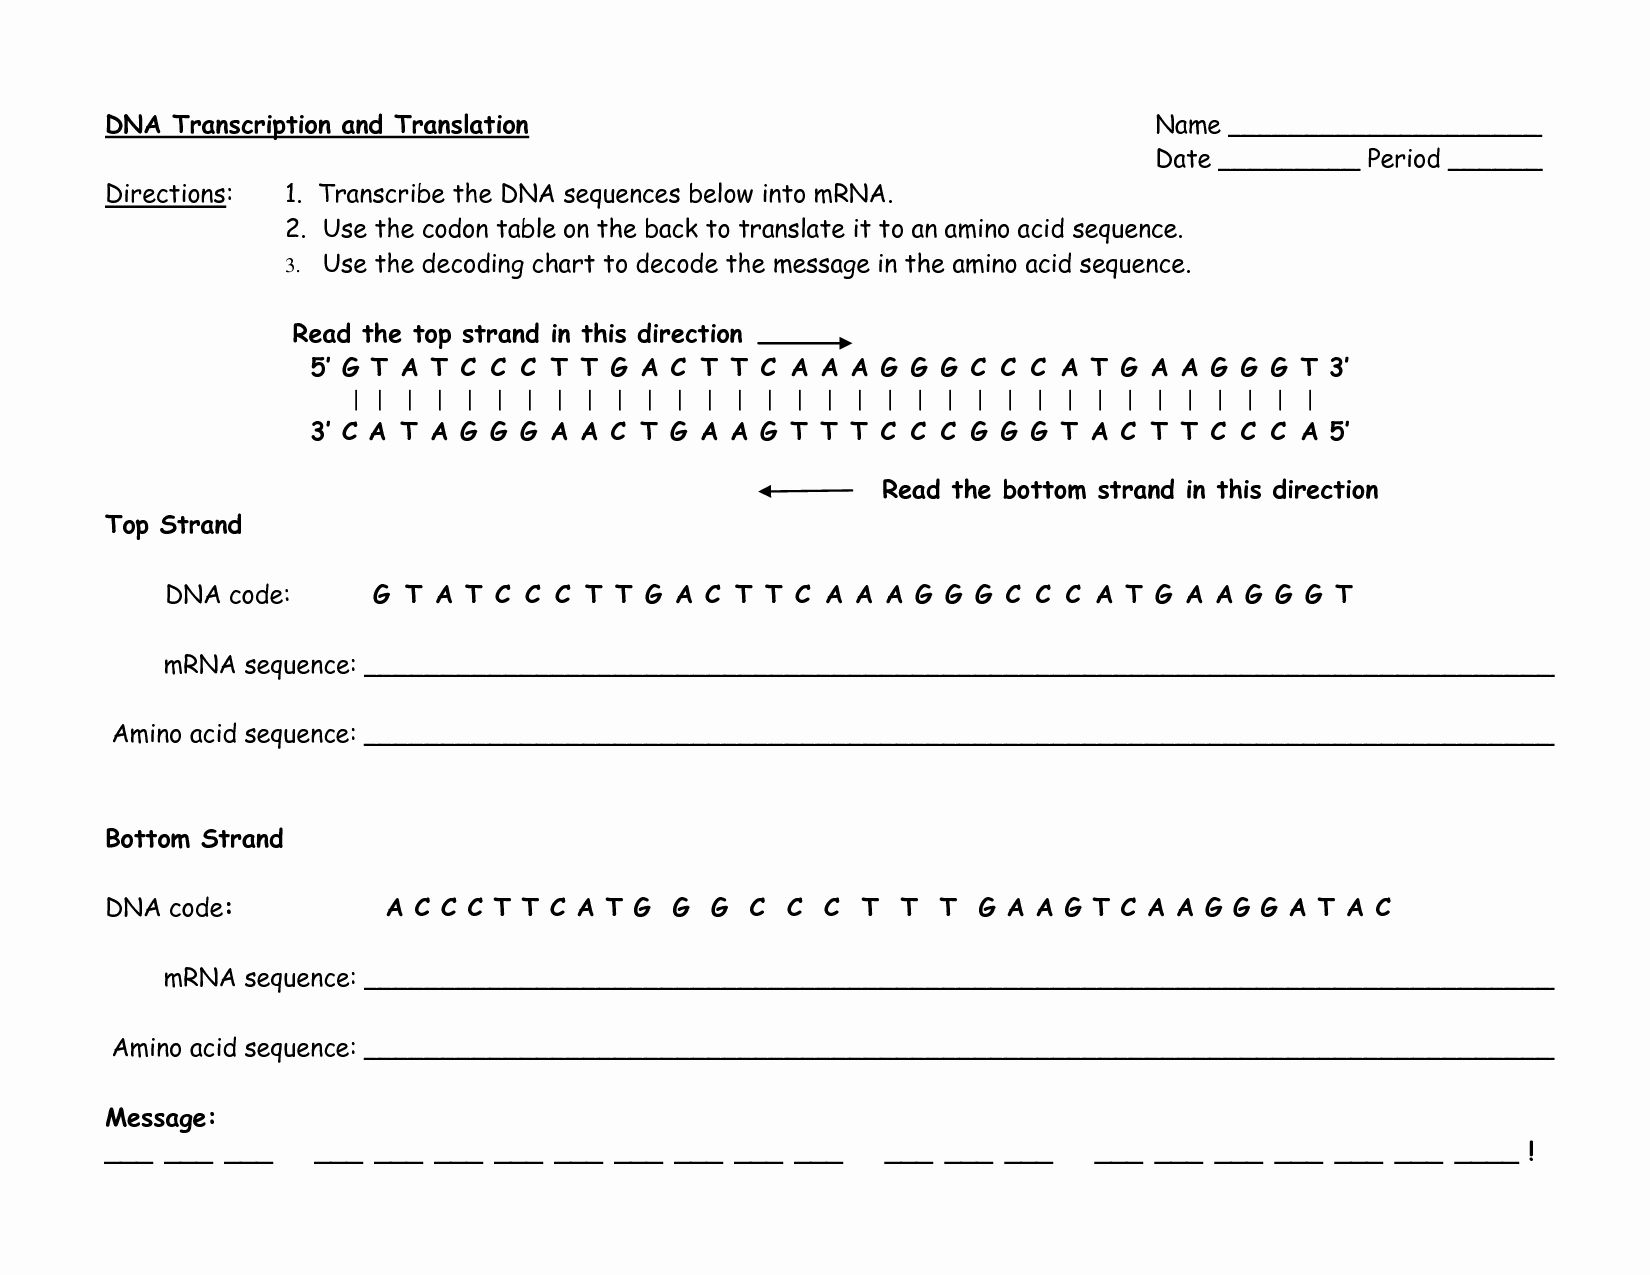 Dna Transcription and Translation Worksheet Inspirational Transcription and Translation Practice Worksheet Key